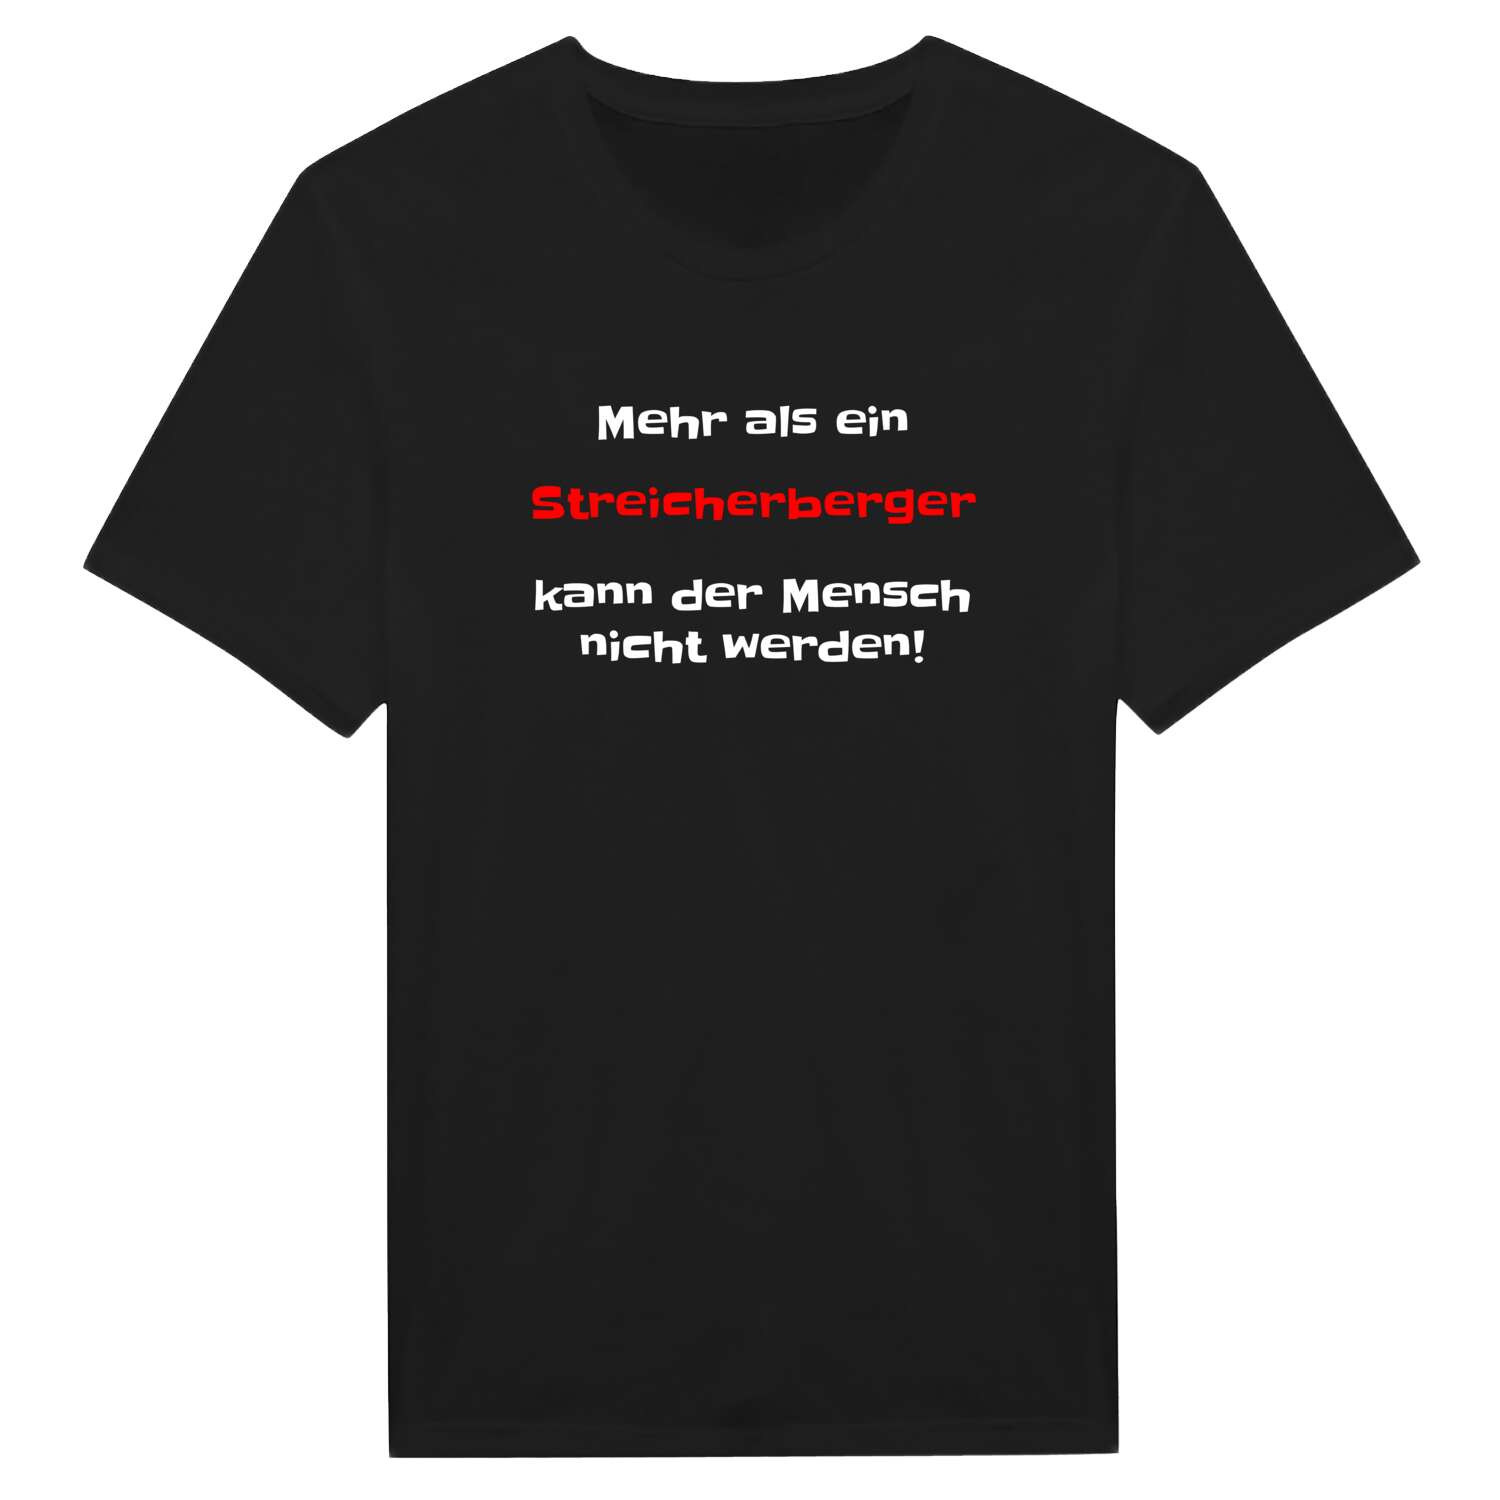 Streicherberg T-Shirt »Mehr als ein«